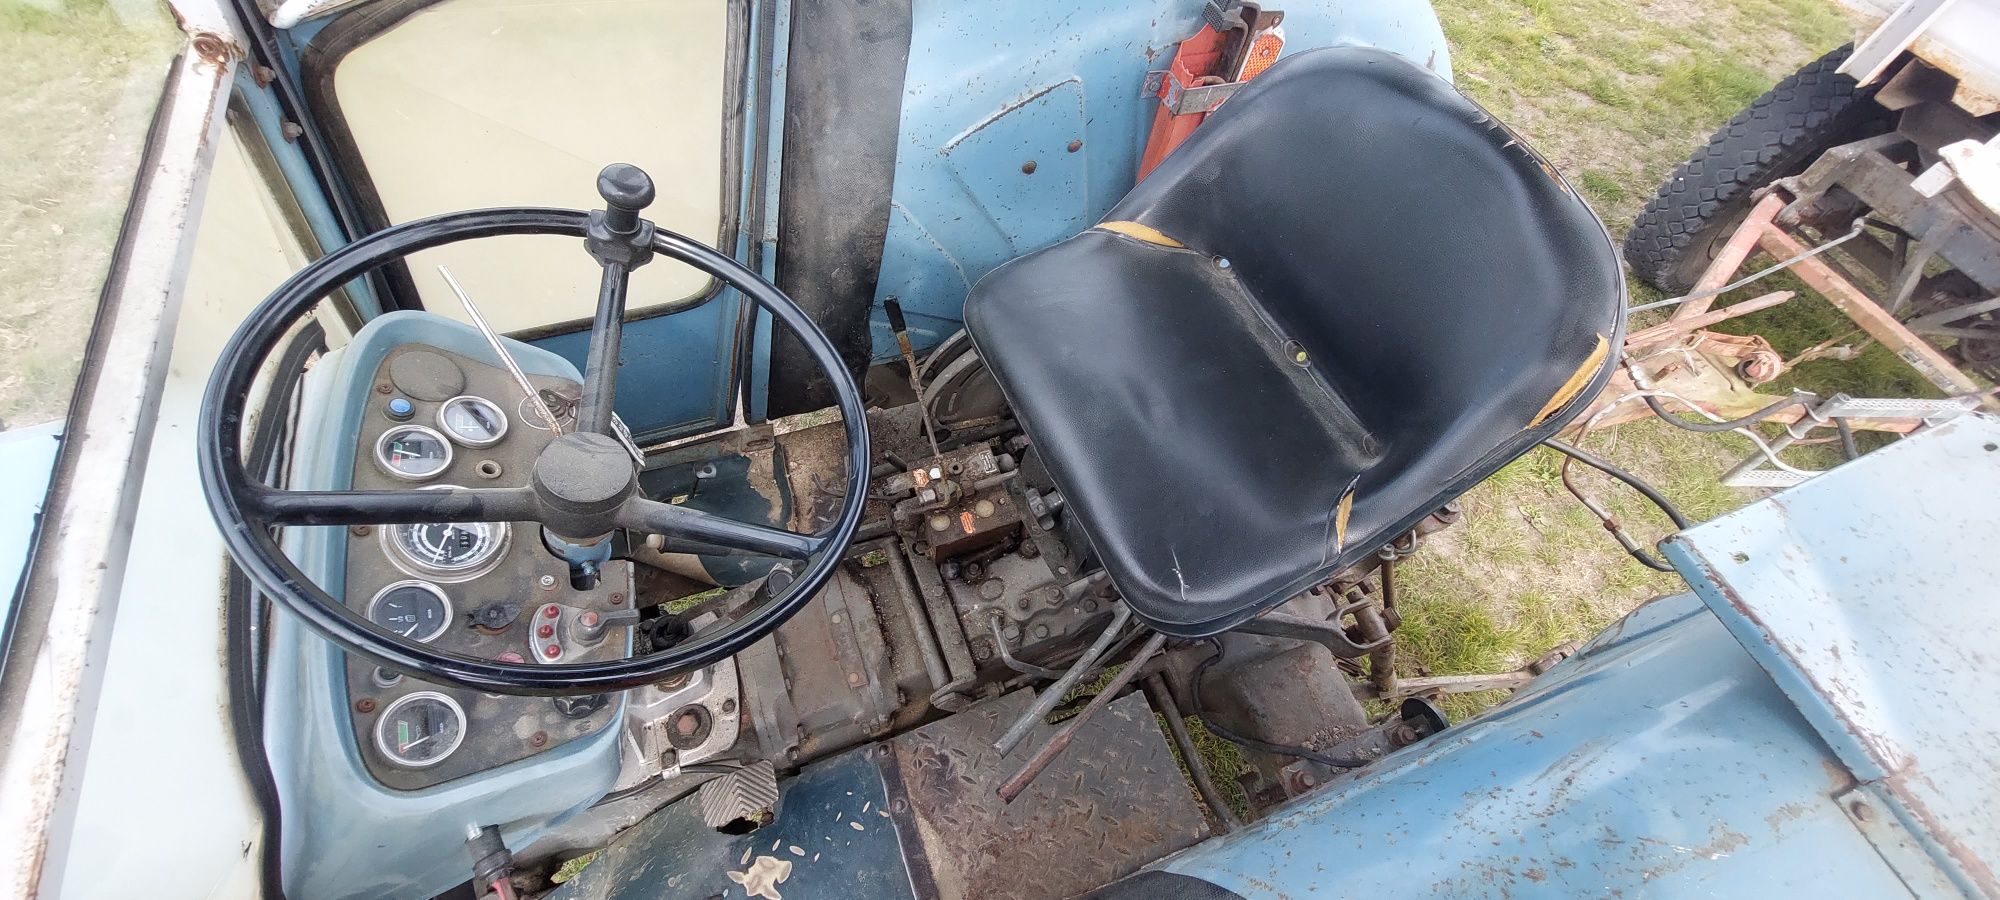 Traktor eicher ferguson (Perkins c360 władymirec)